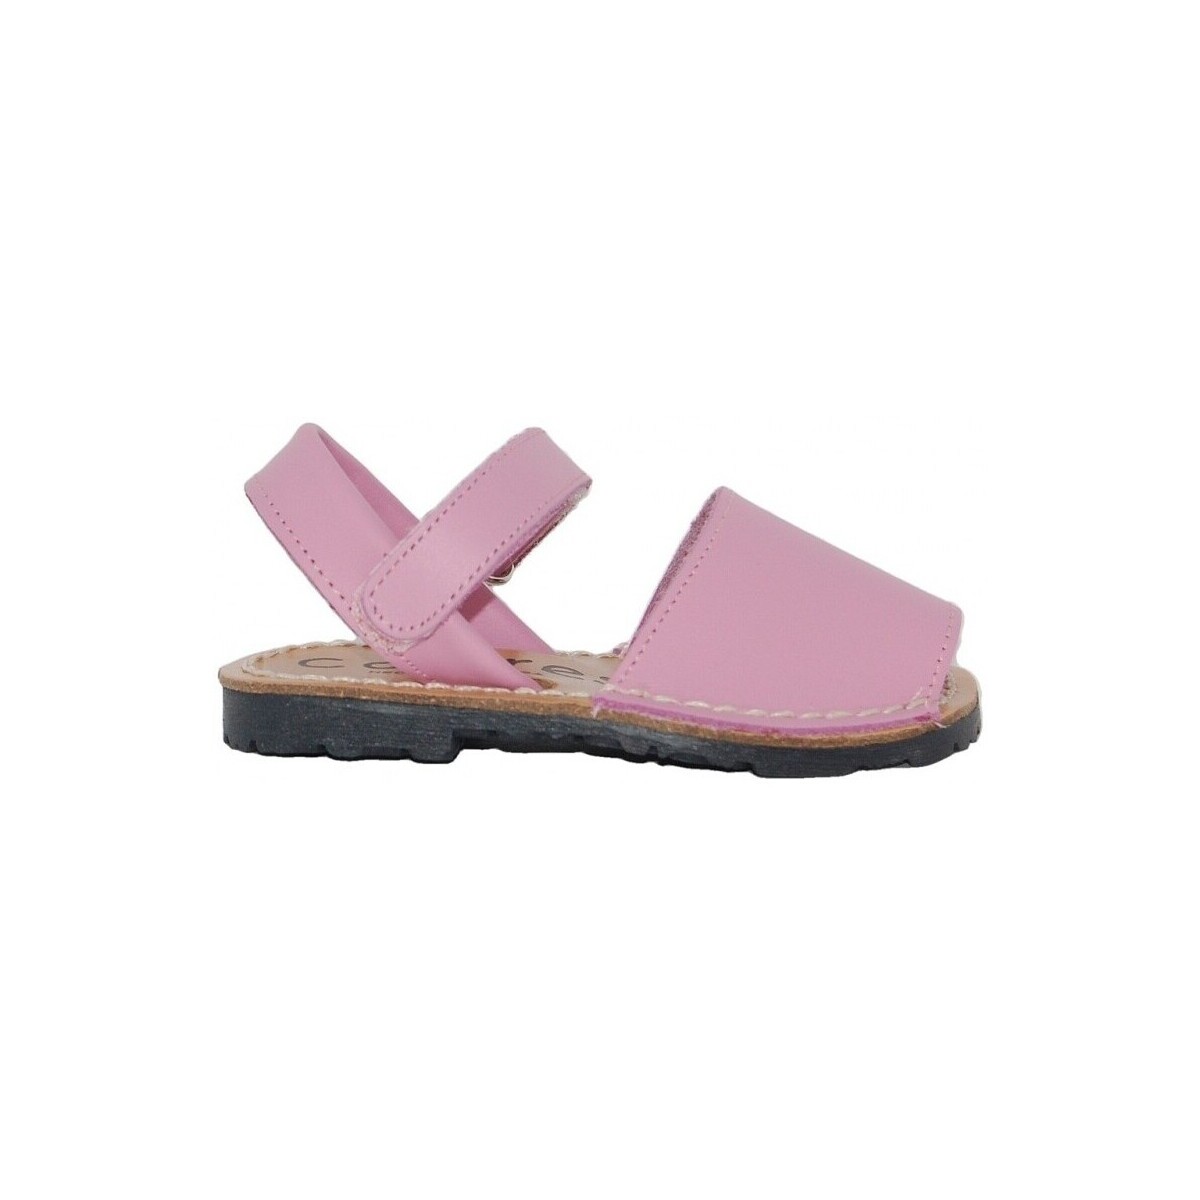 kengät Sandaalit ja avokkaat Colores 20111-18 Vaaleanpunainen